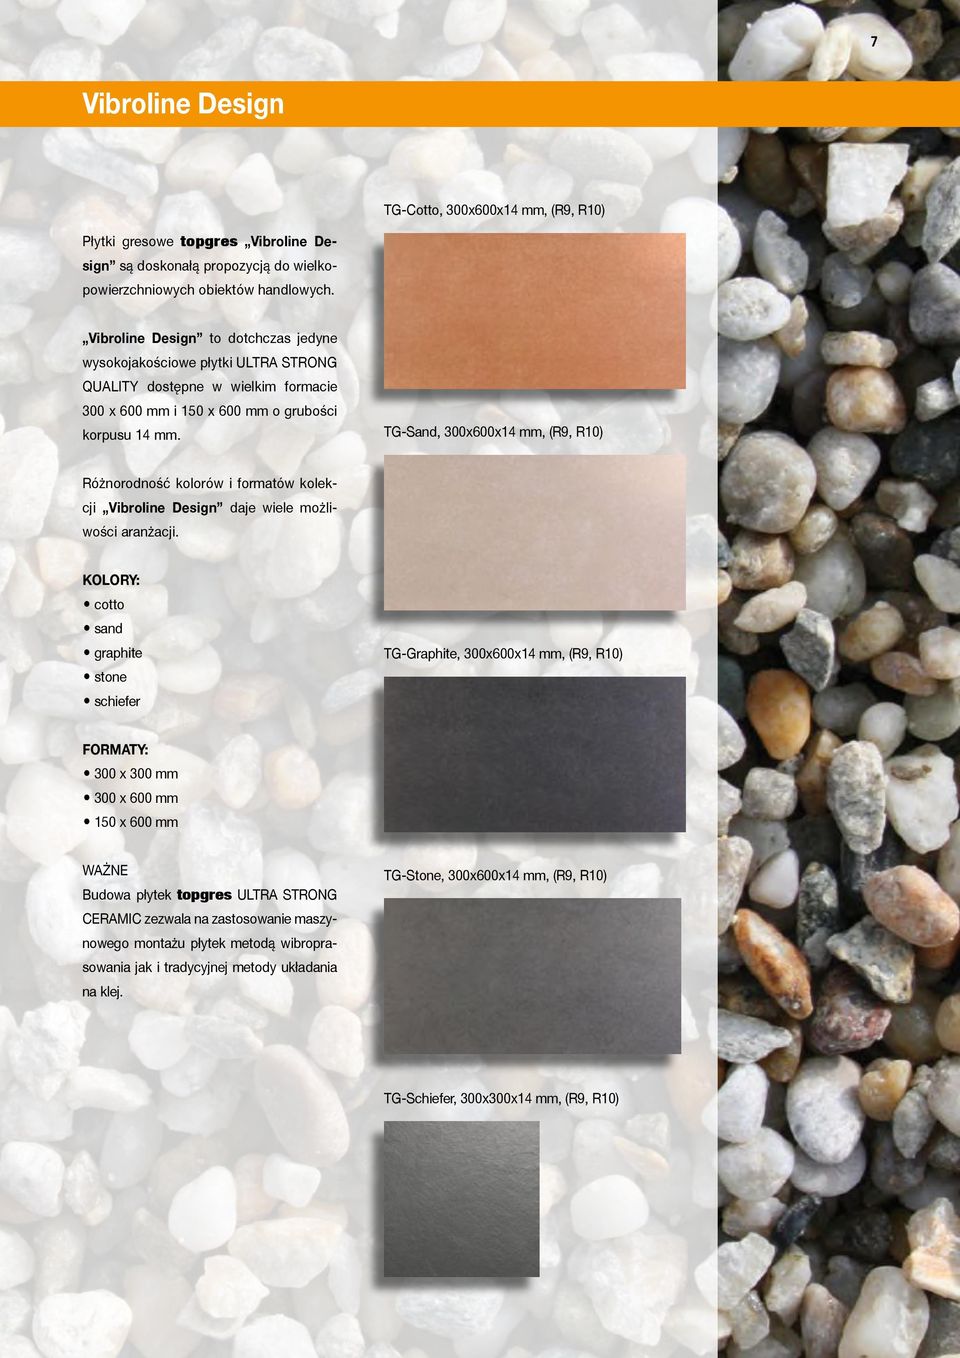 TG-Sand, 300x600x14 mm, (R9, R10) Różnorodność kolorów i formatów kolekcji Vibroline Design daje wiele możliwości aranżacji.